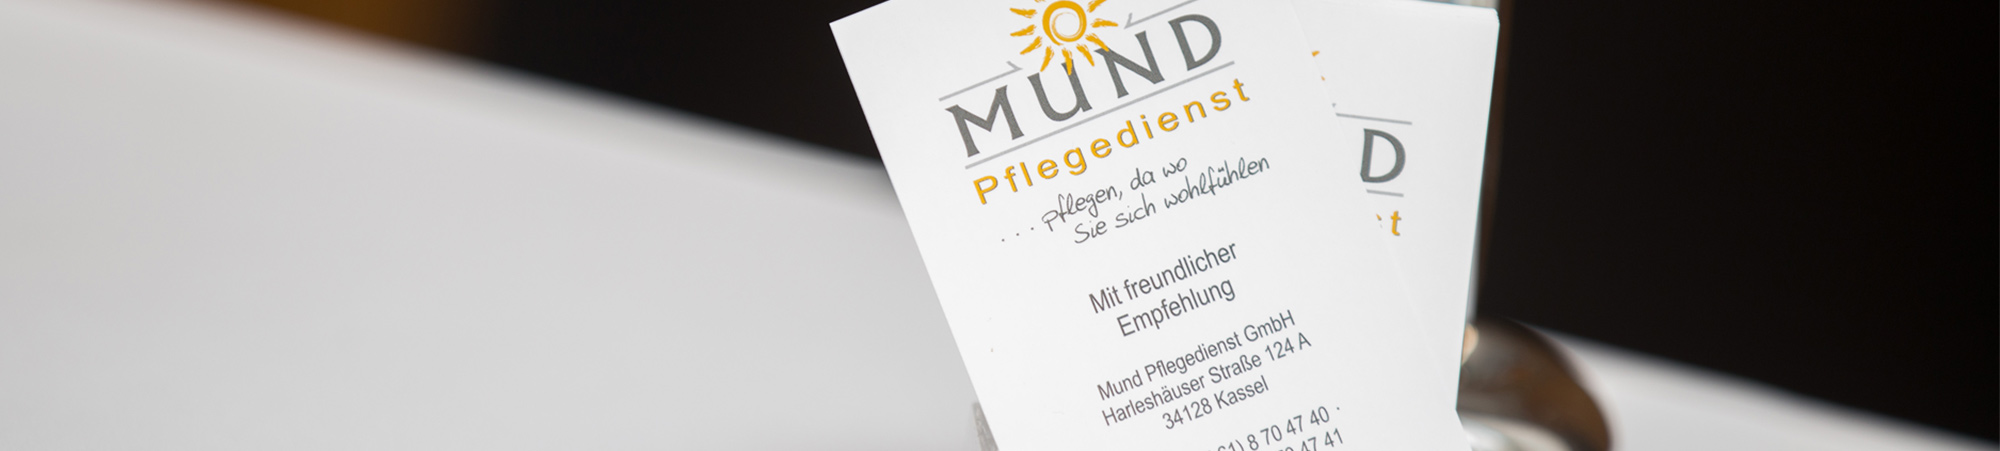 Mund Pflegedienst GmbH